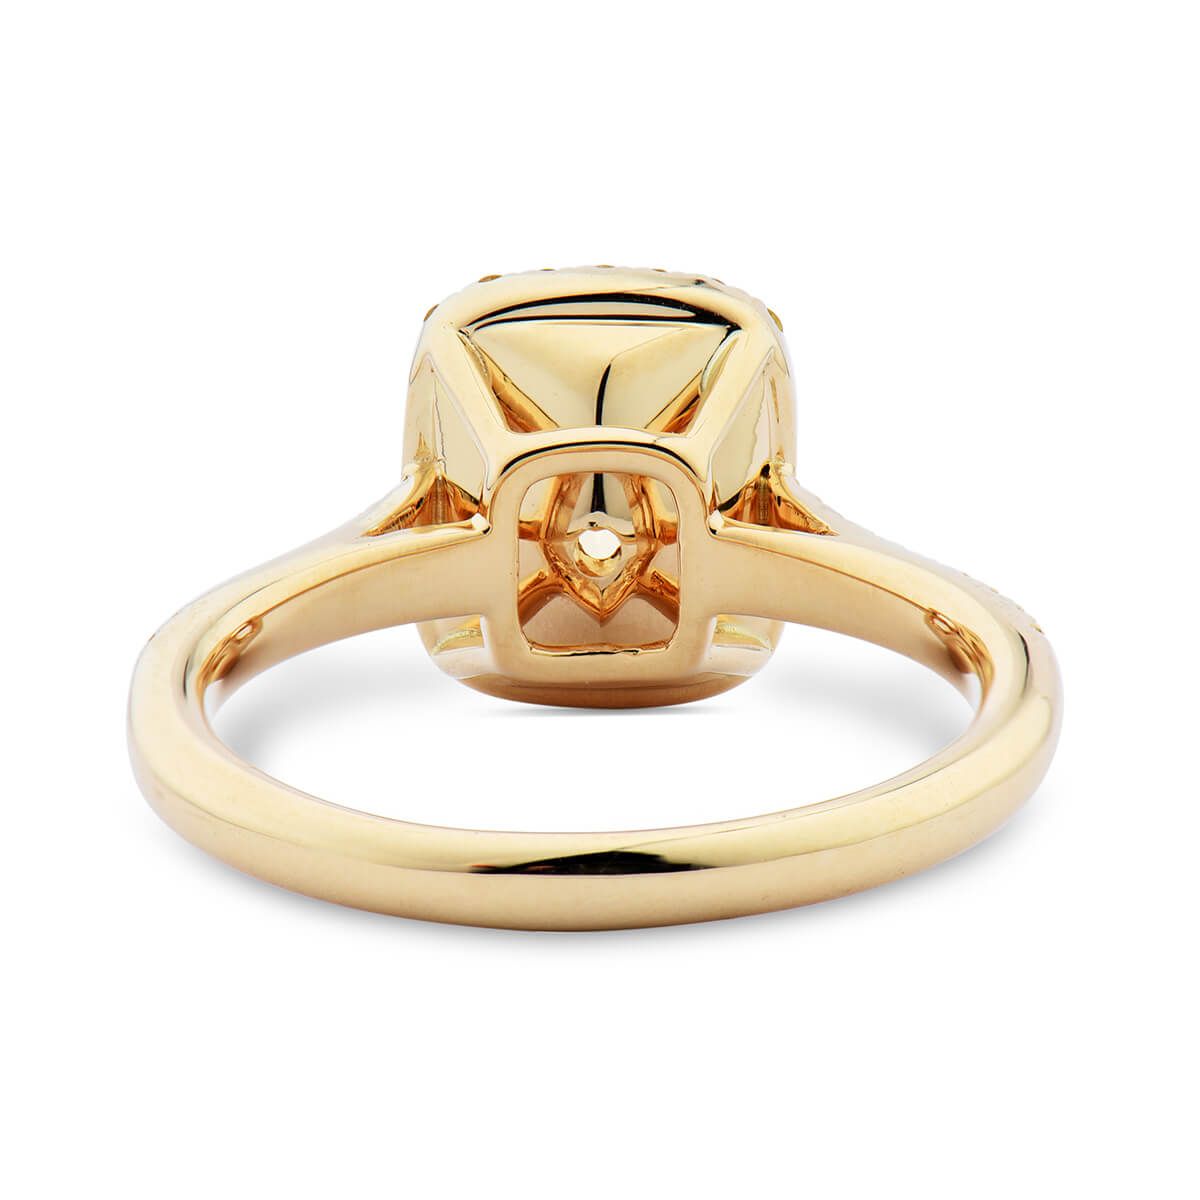 Fancy Intense Yellow Diamond Ring, 2.01 Ct. (2.29 Ct. TW), Cushion shape, GIA Certified, 2195149621